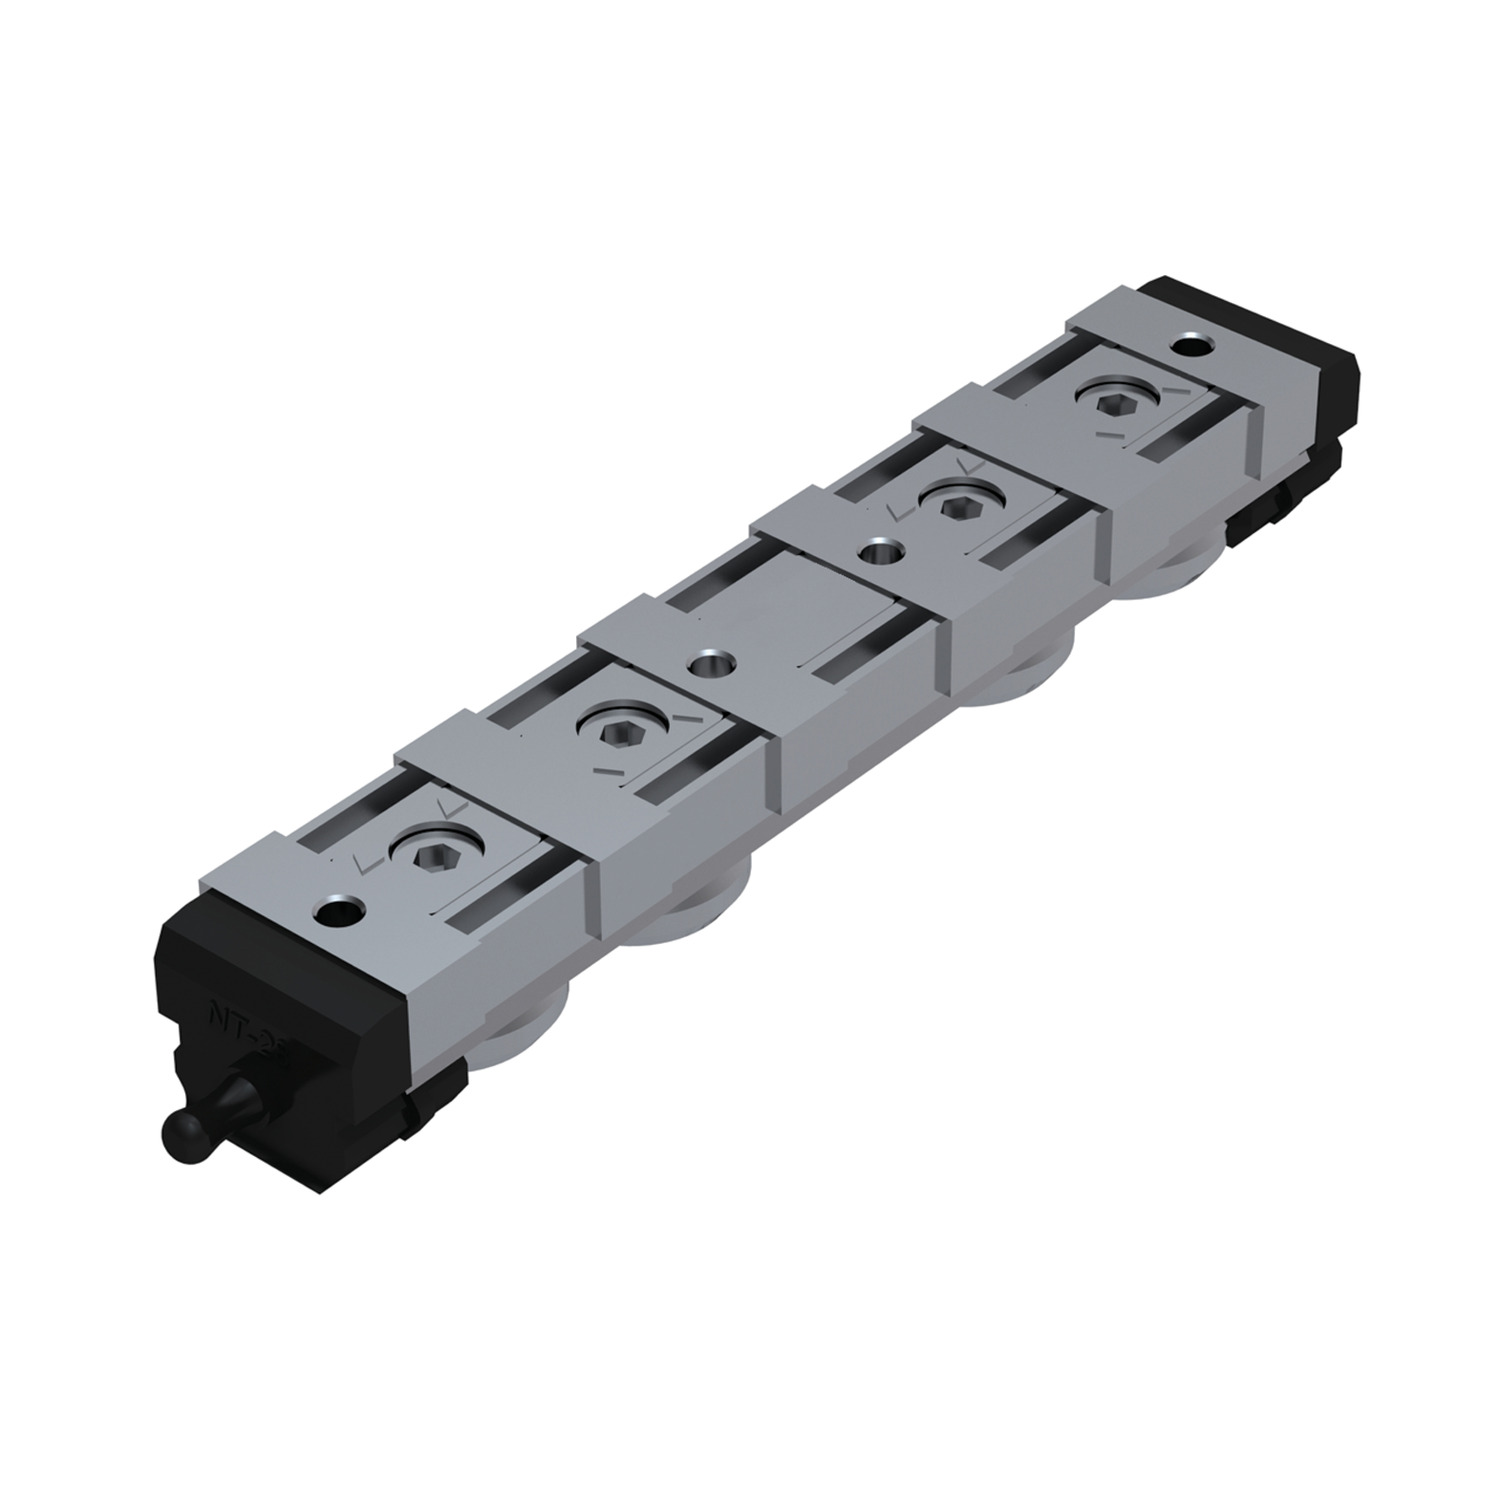 Product L1943.NL, Heavy Duty Sliders - Size 43 standard - long / 